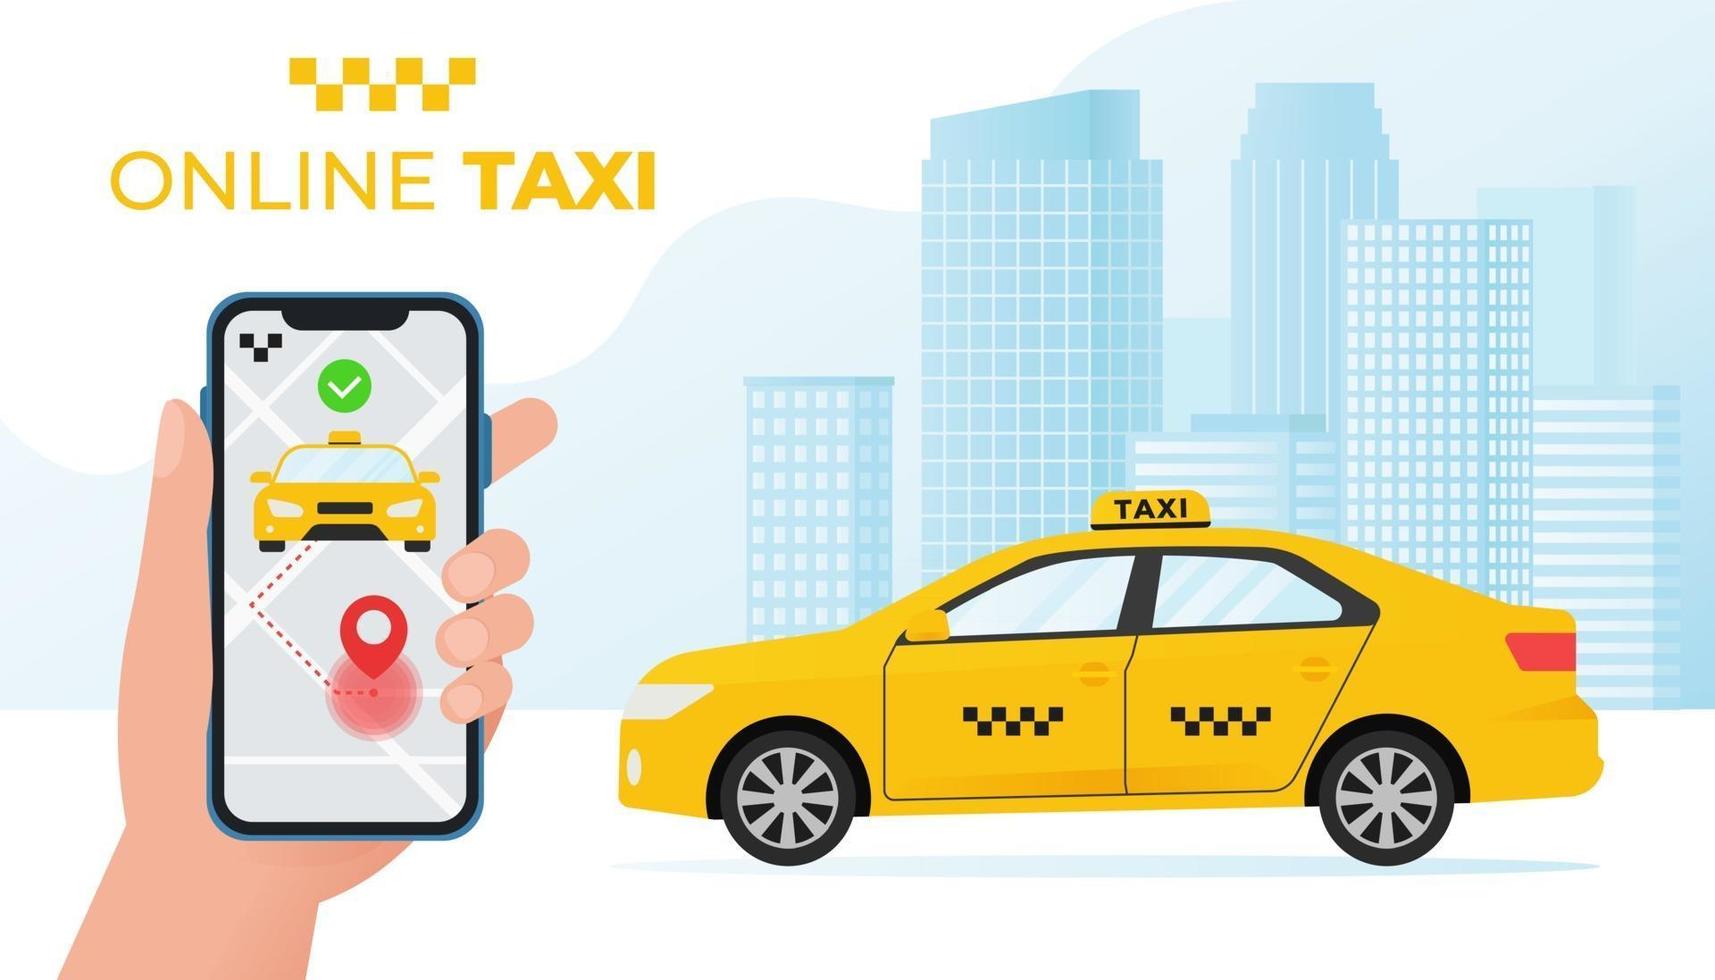 concetto di servizio taxi online. auto taxi gialla e smartphone con applicazione taxi sullo sfondo della città. illustrazione vettoriale in stile piatto